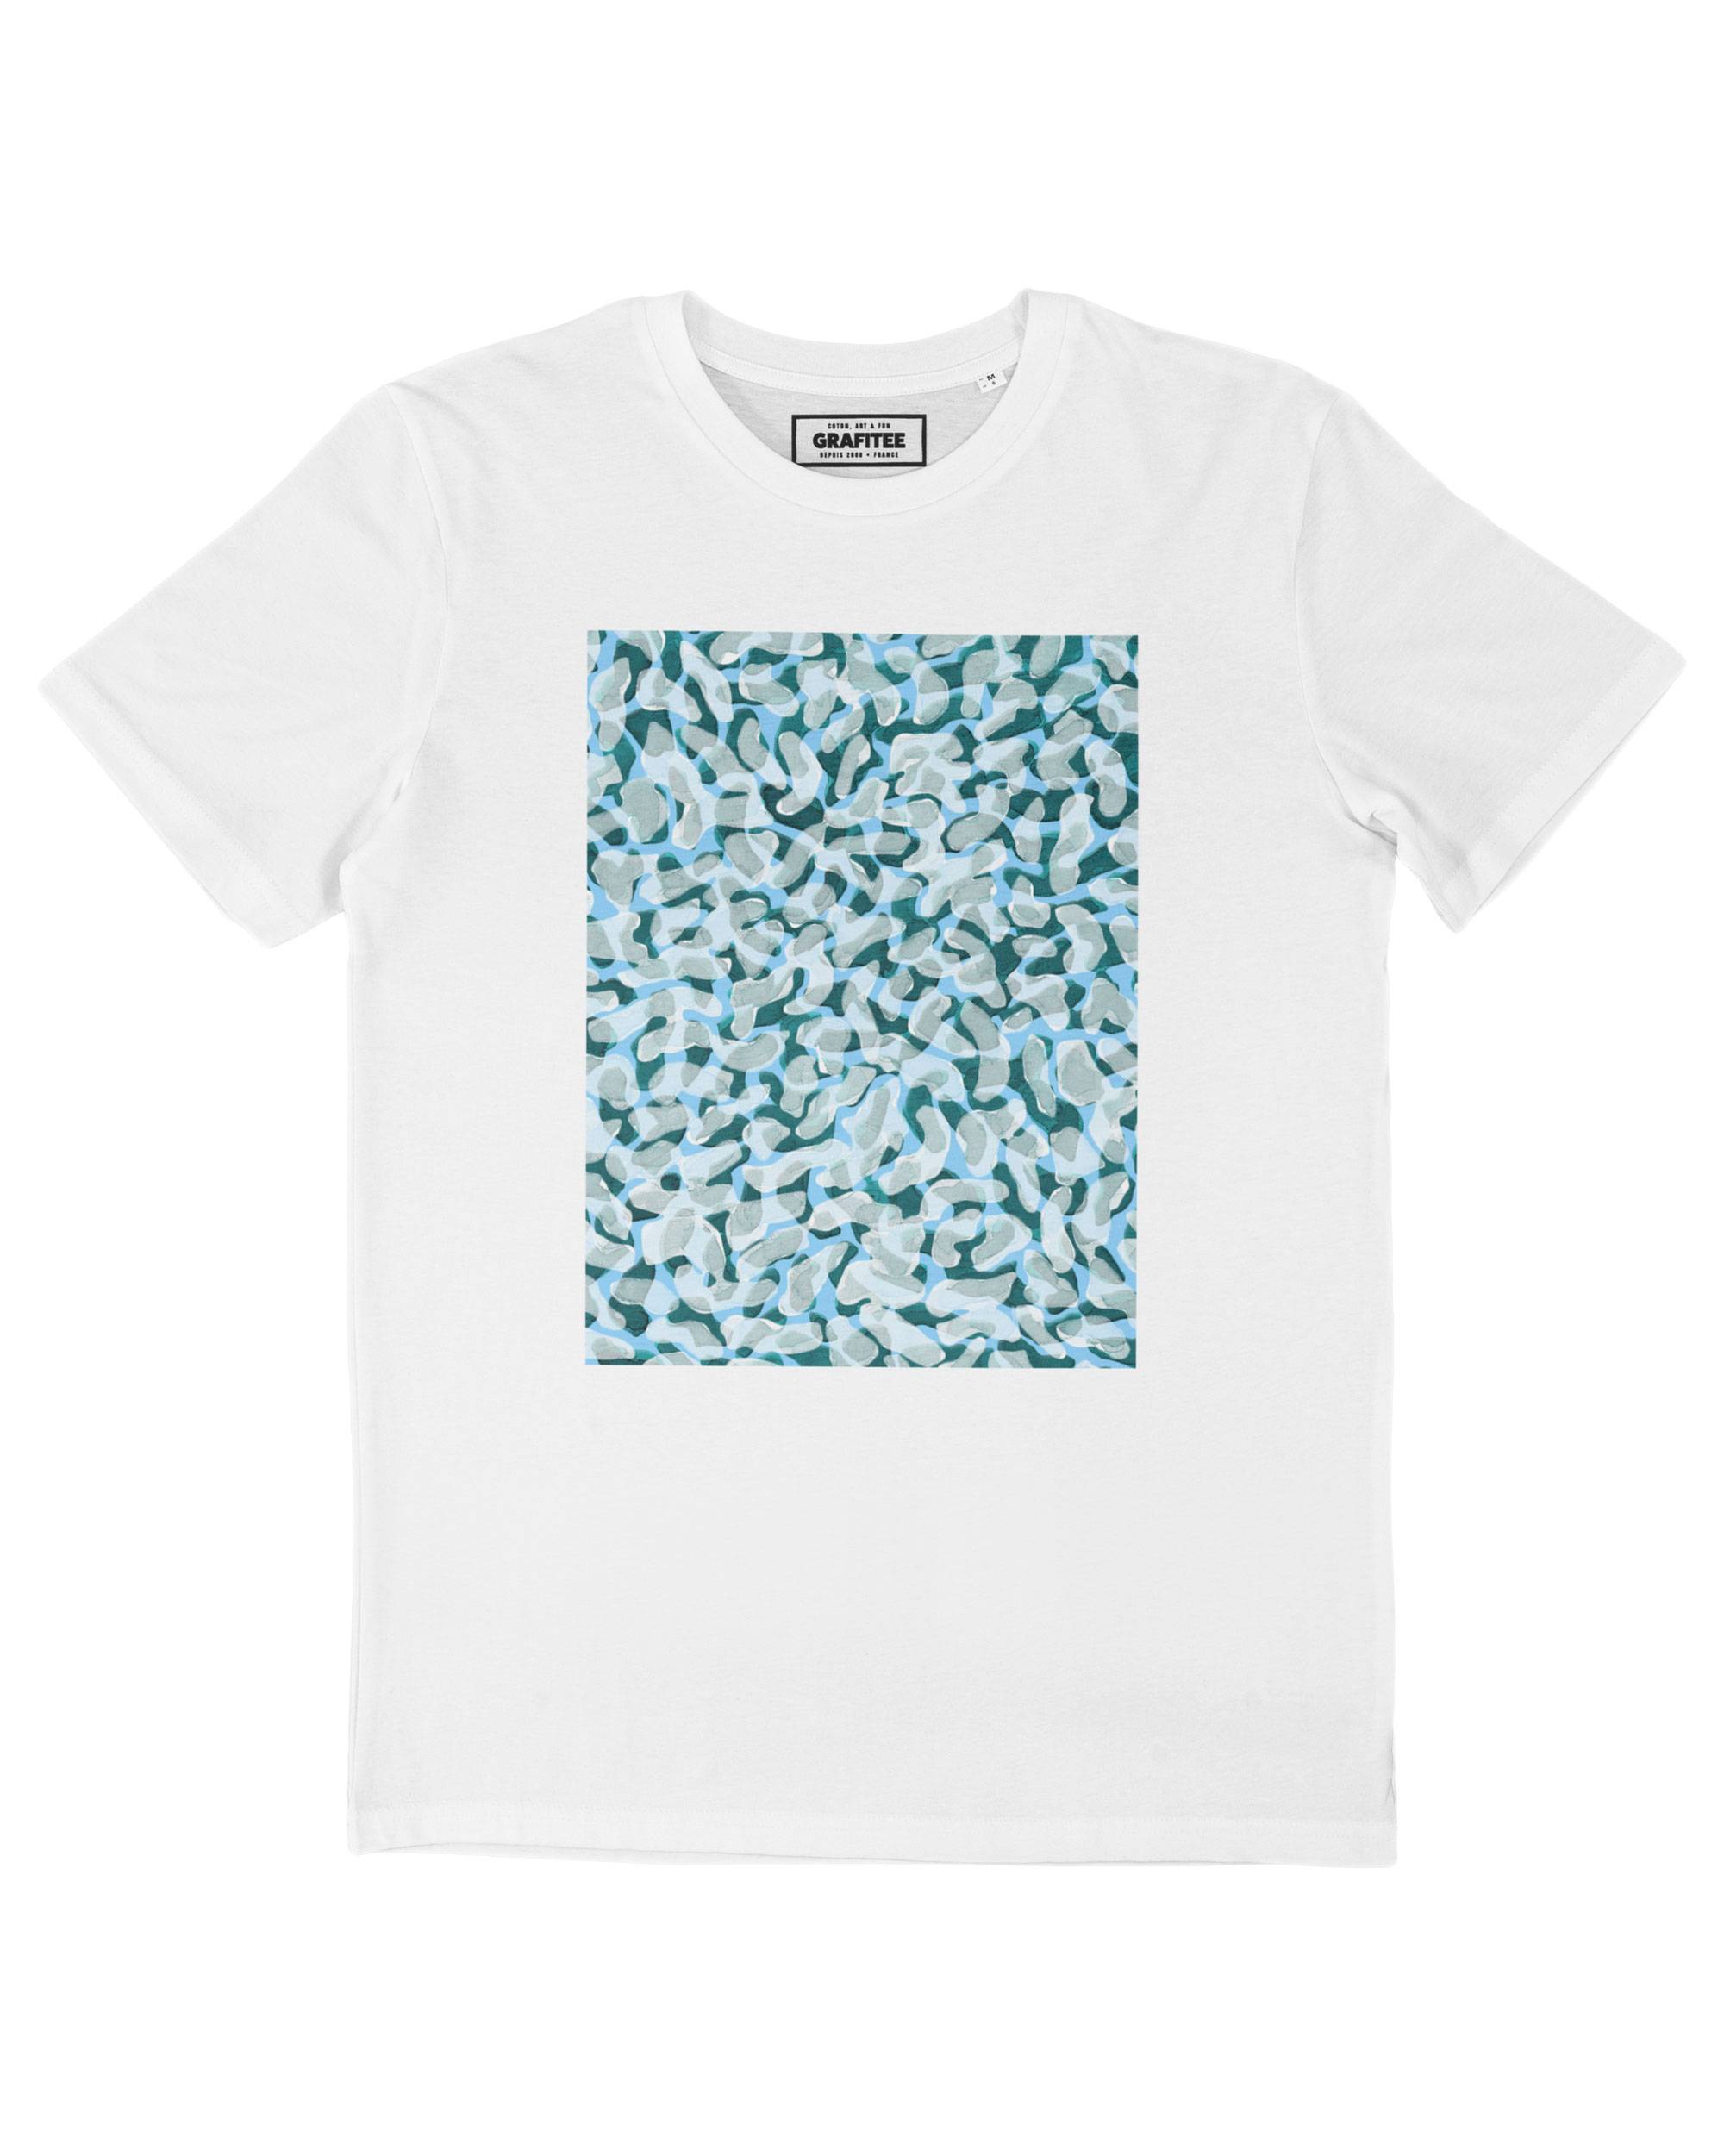 T-shirt Motifs Bactéries Grafitee